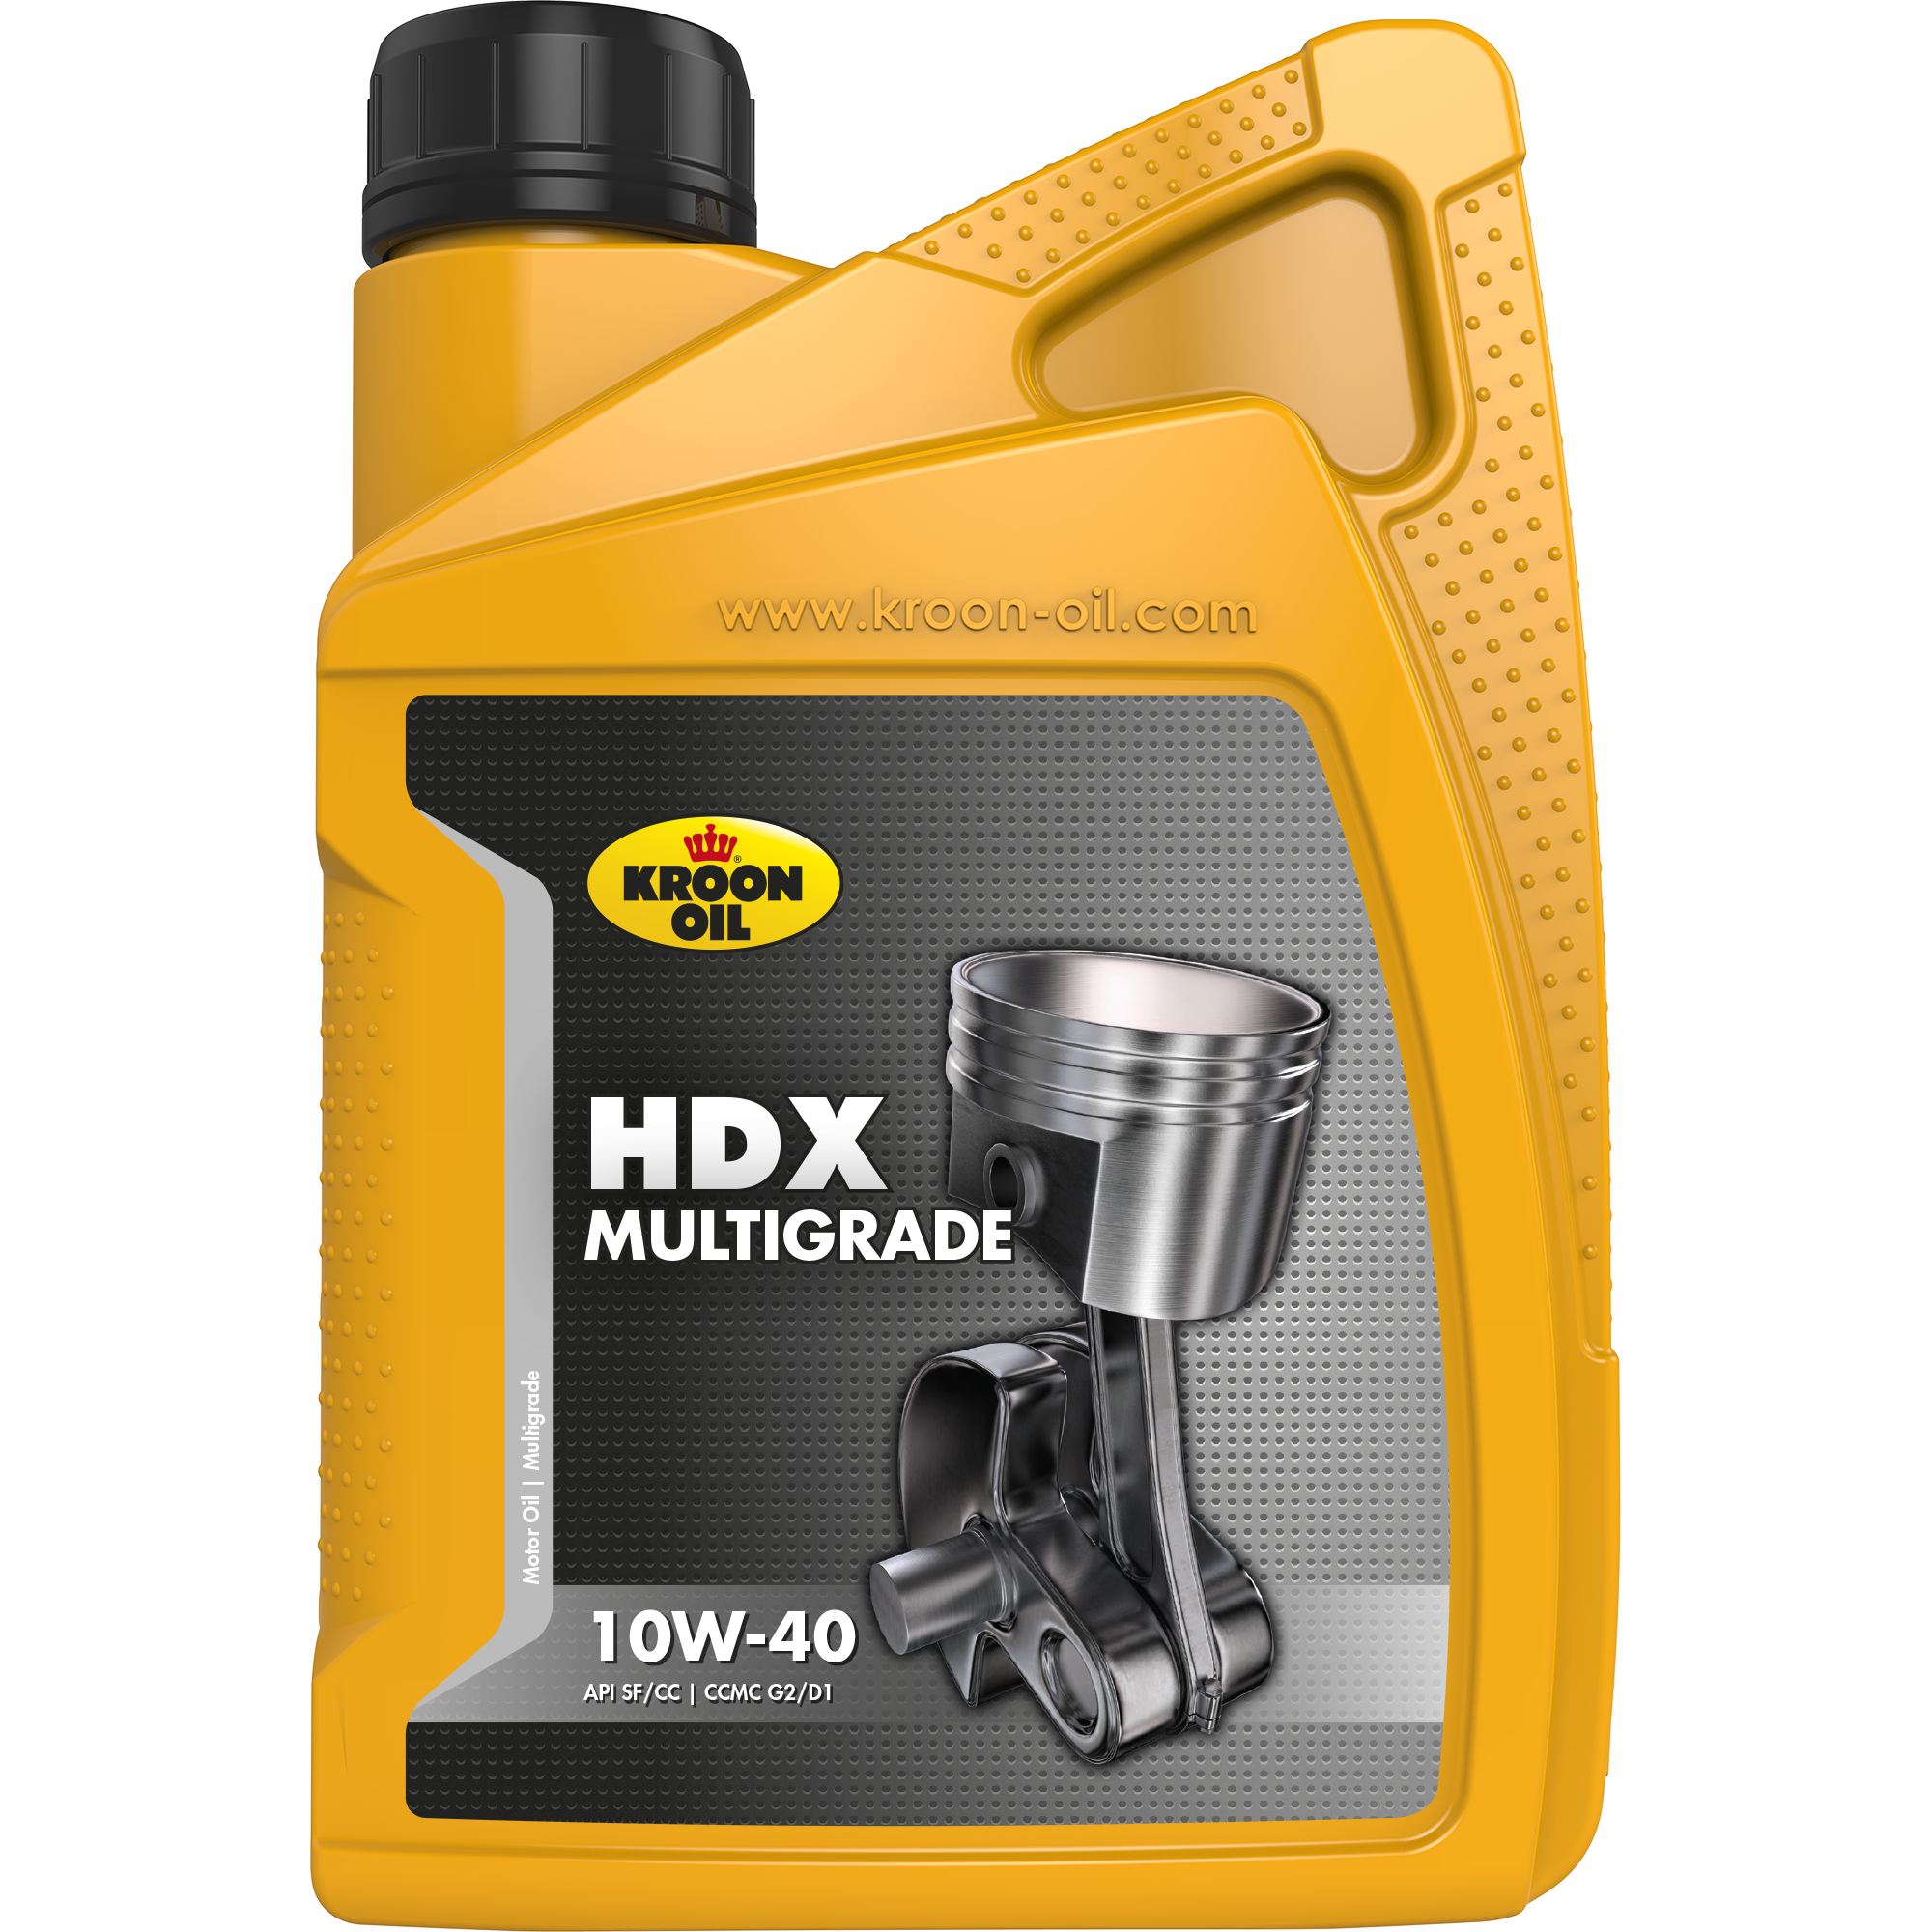 00203-1 HDX 10W-40 is een motorolie gebaseerd op hoogwaardige solvent geraffineerde basisoliën.